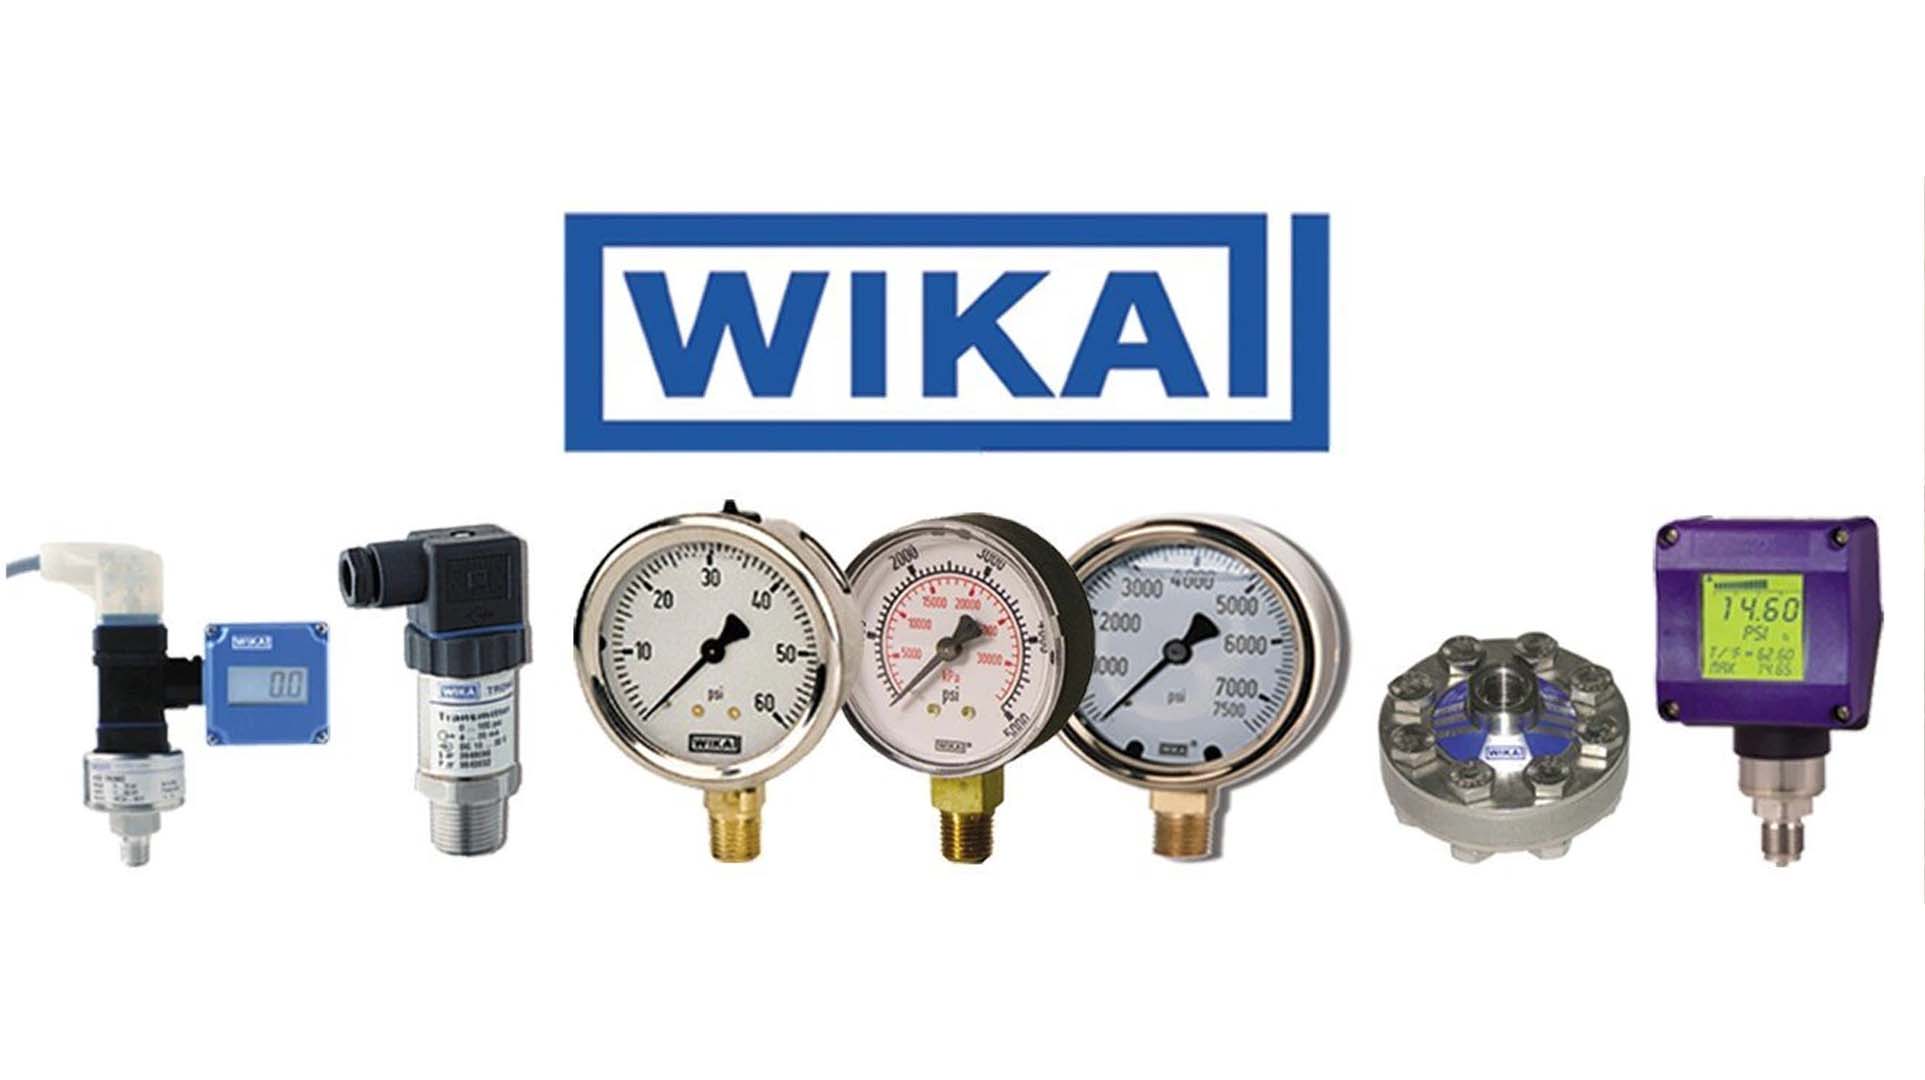 گیج فشار ویکا (WIKA) 0-10 بار صفحه 6 سانتی متر روغنی